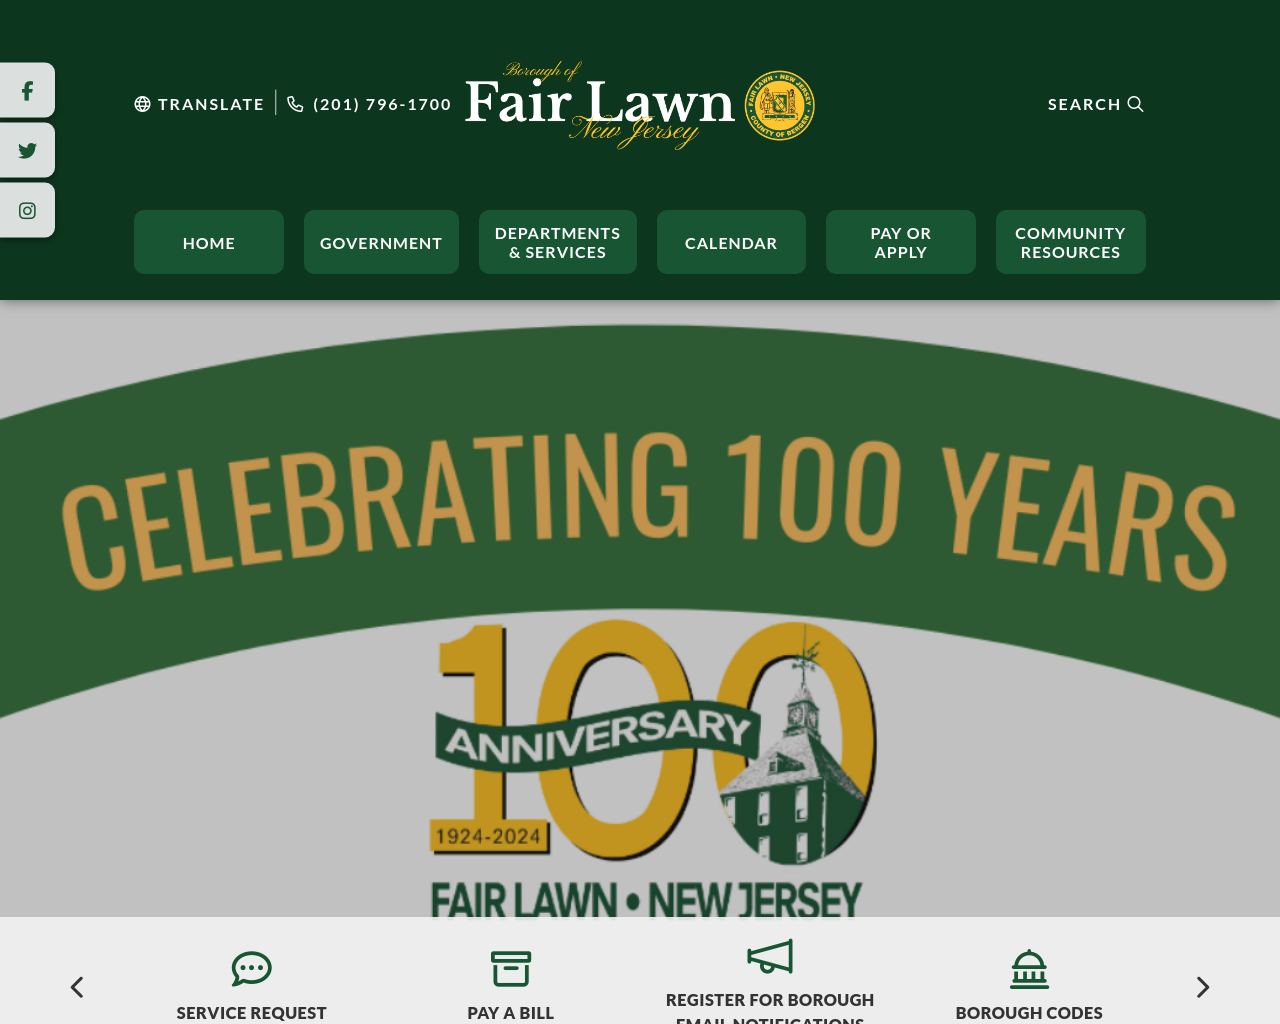 fairlawn.org